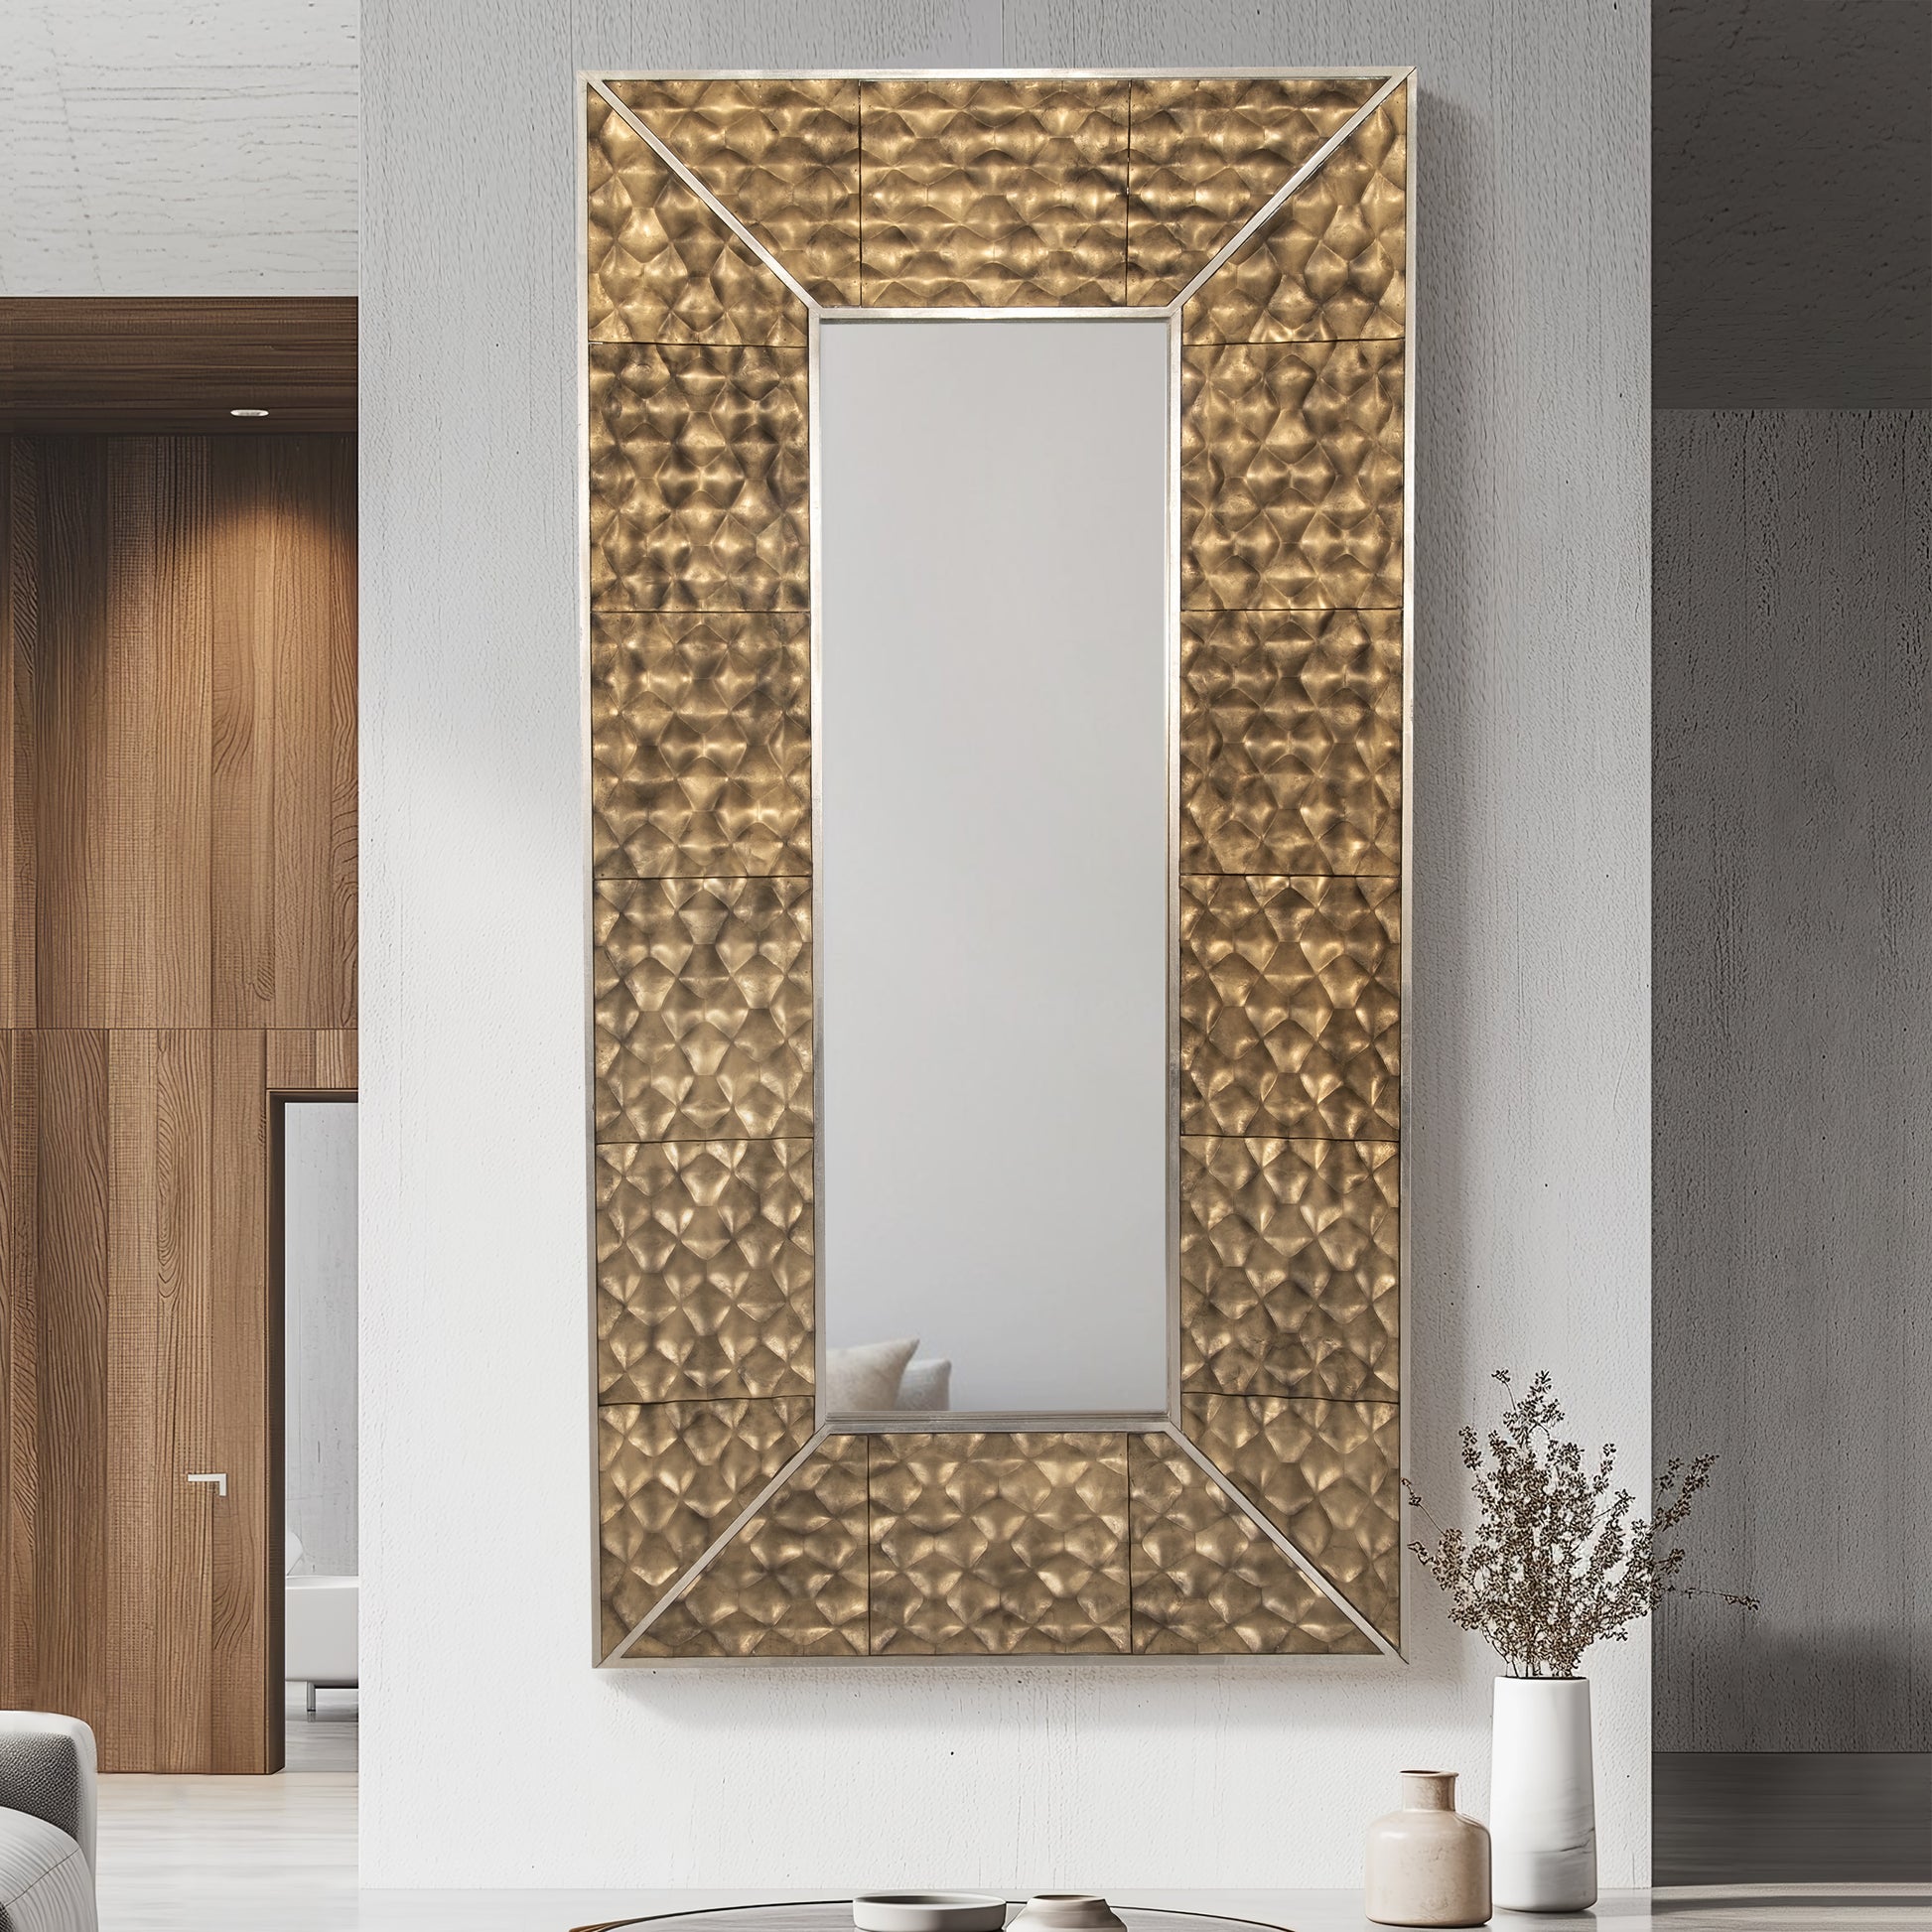 47x94, Gold Scales Mirror - Elite Maison